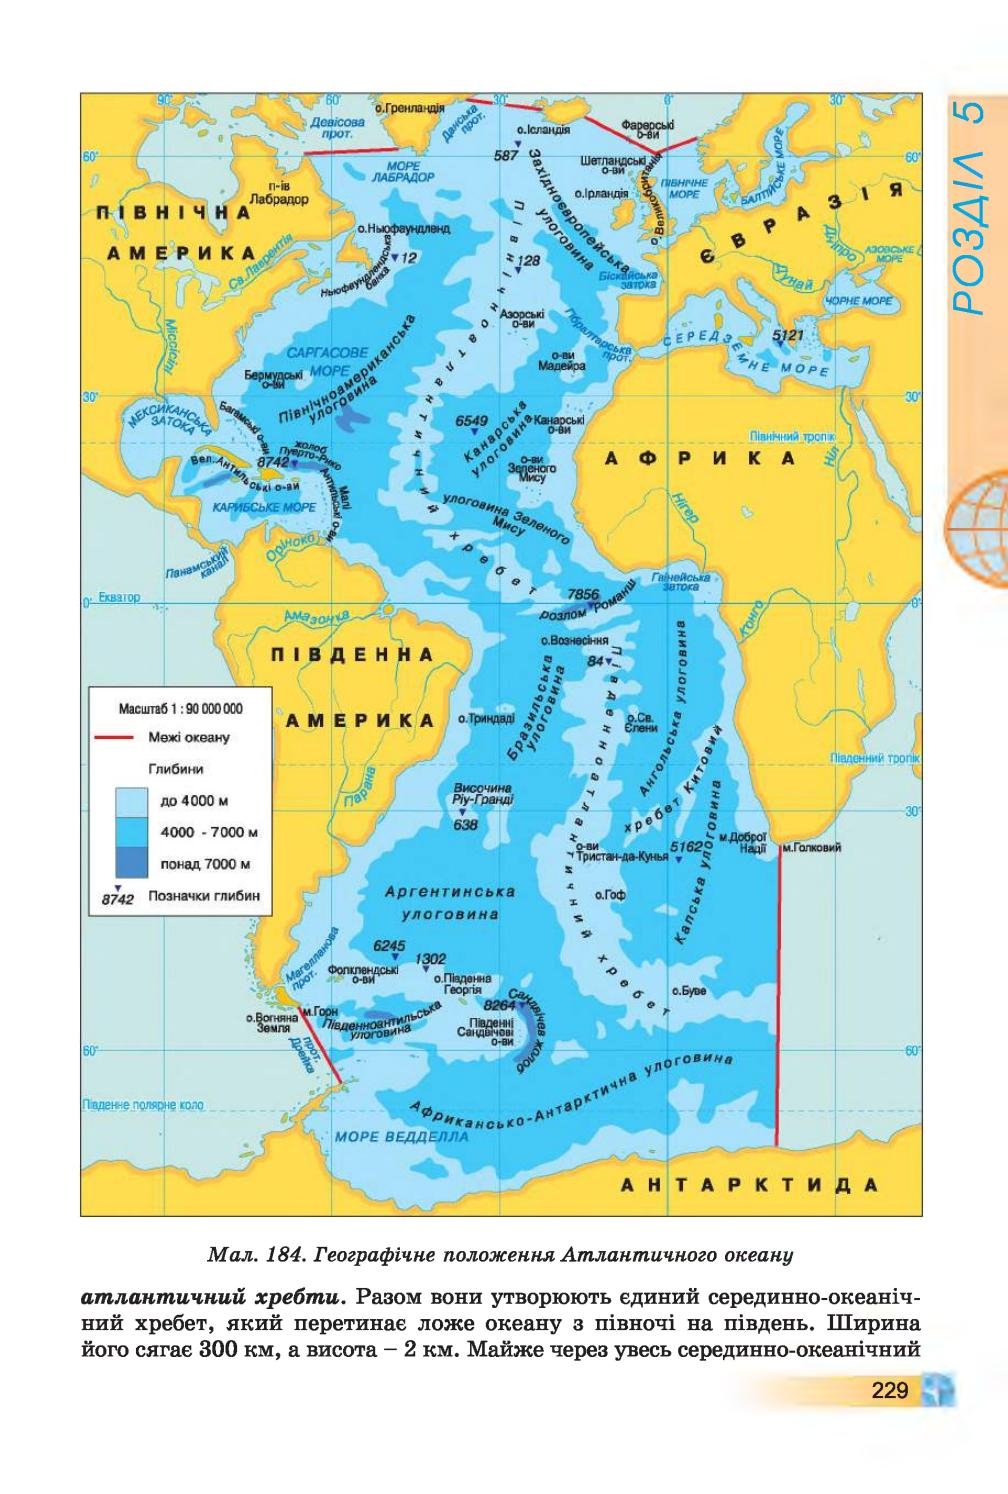 Самое большой залив атлантического океана. Моря Северной Атлантики на карте. Карта Атлантического океана подробная. Атлантический океан географическая карта. Крата Атлантического океана.